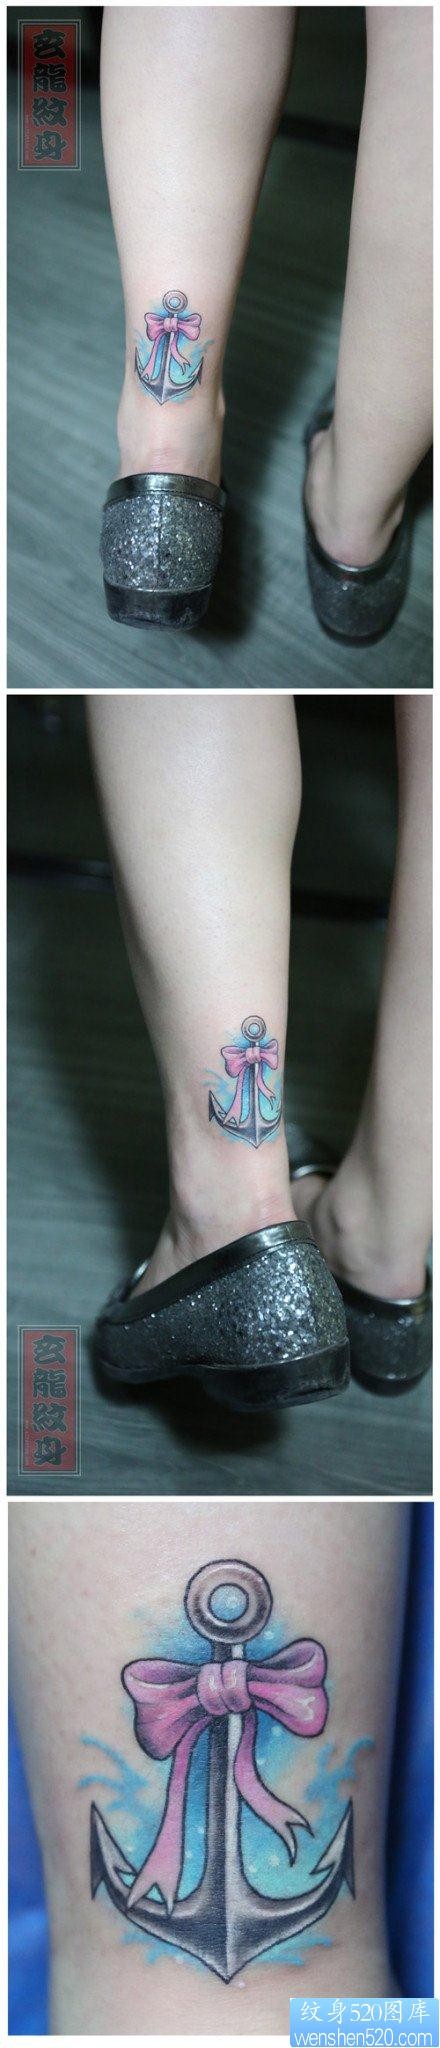 女人腿部精美蝴蝶结与船锚纹身图片